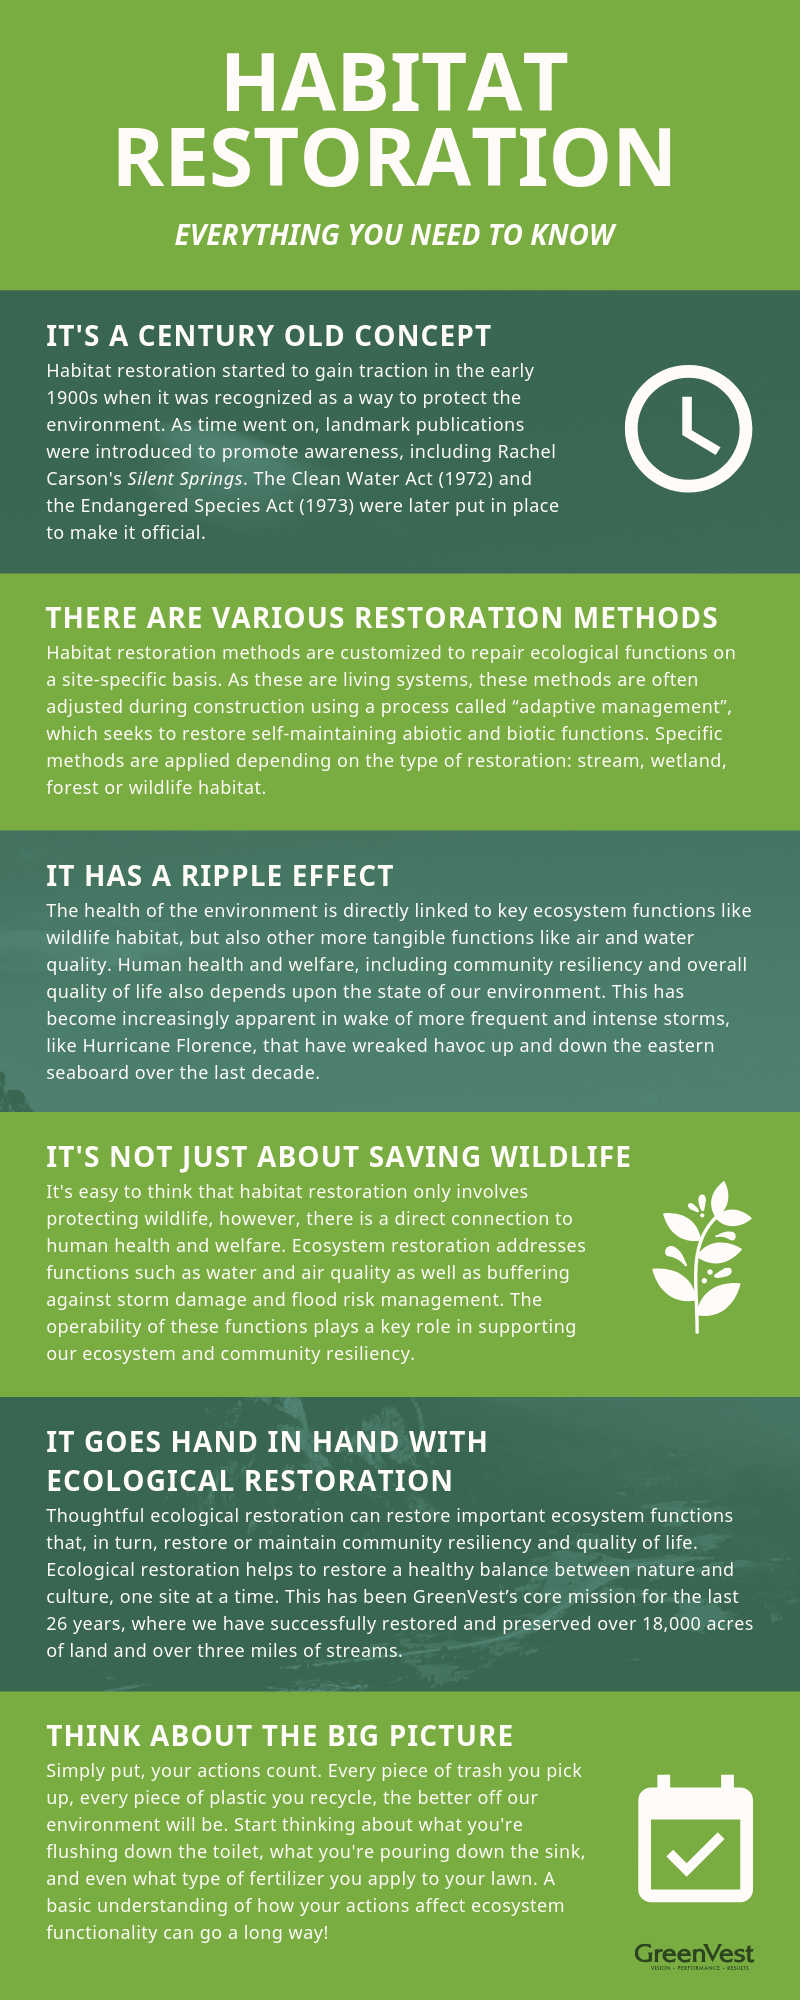 Habitat restoration infographic